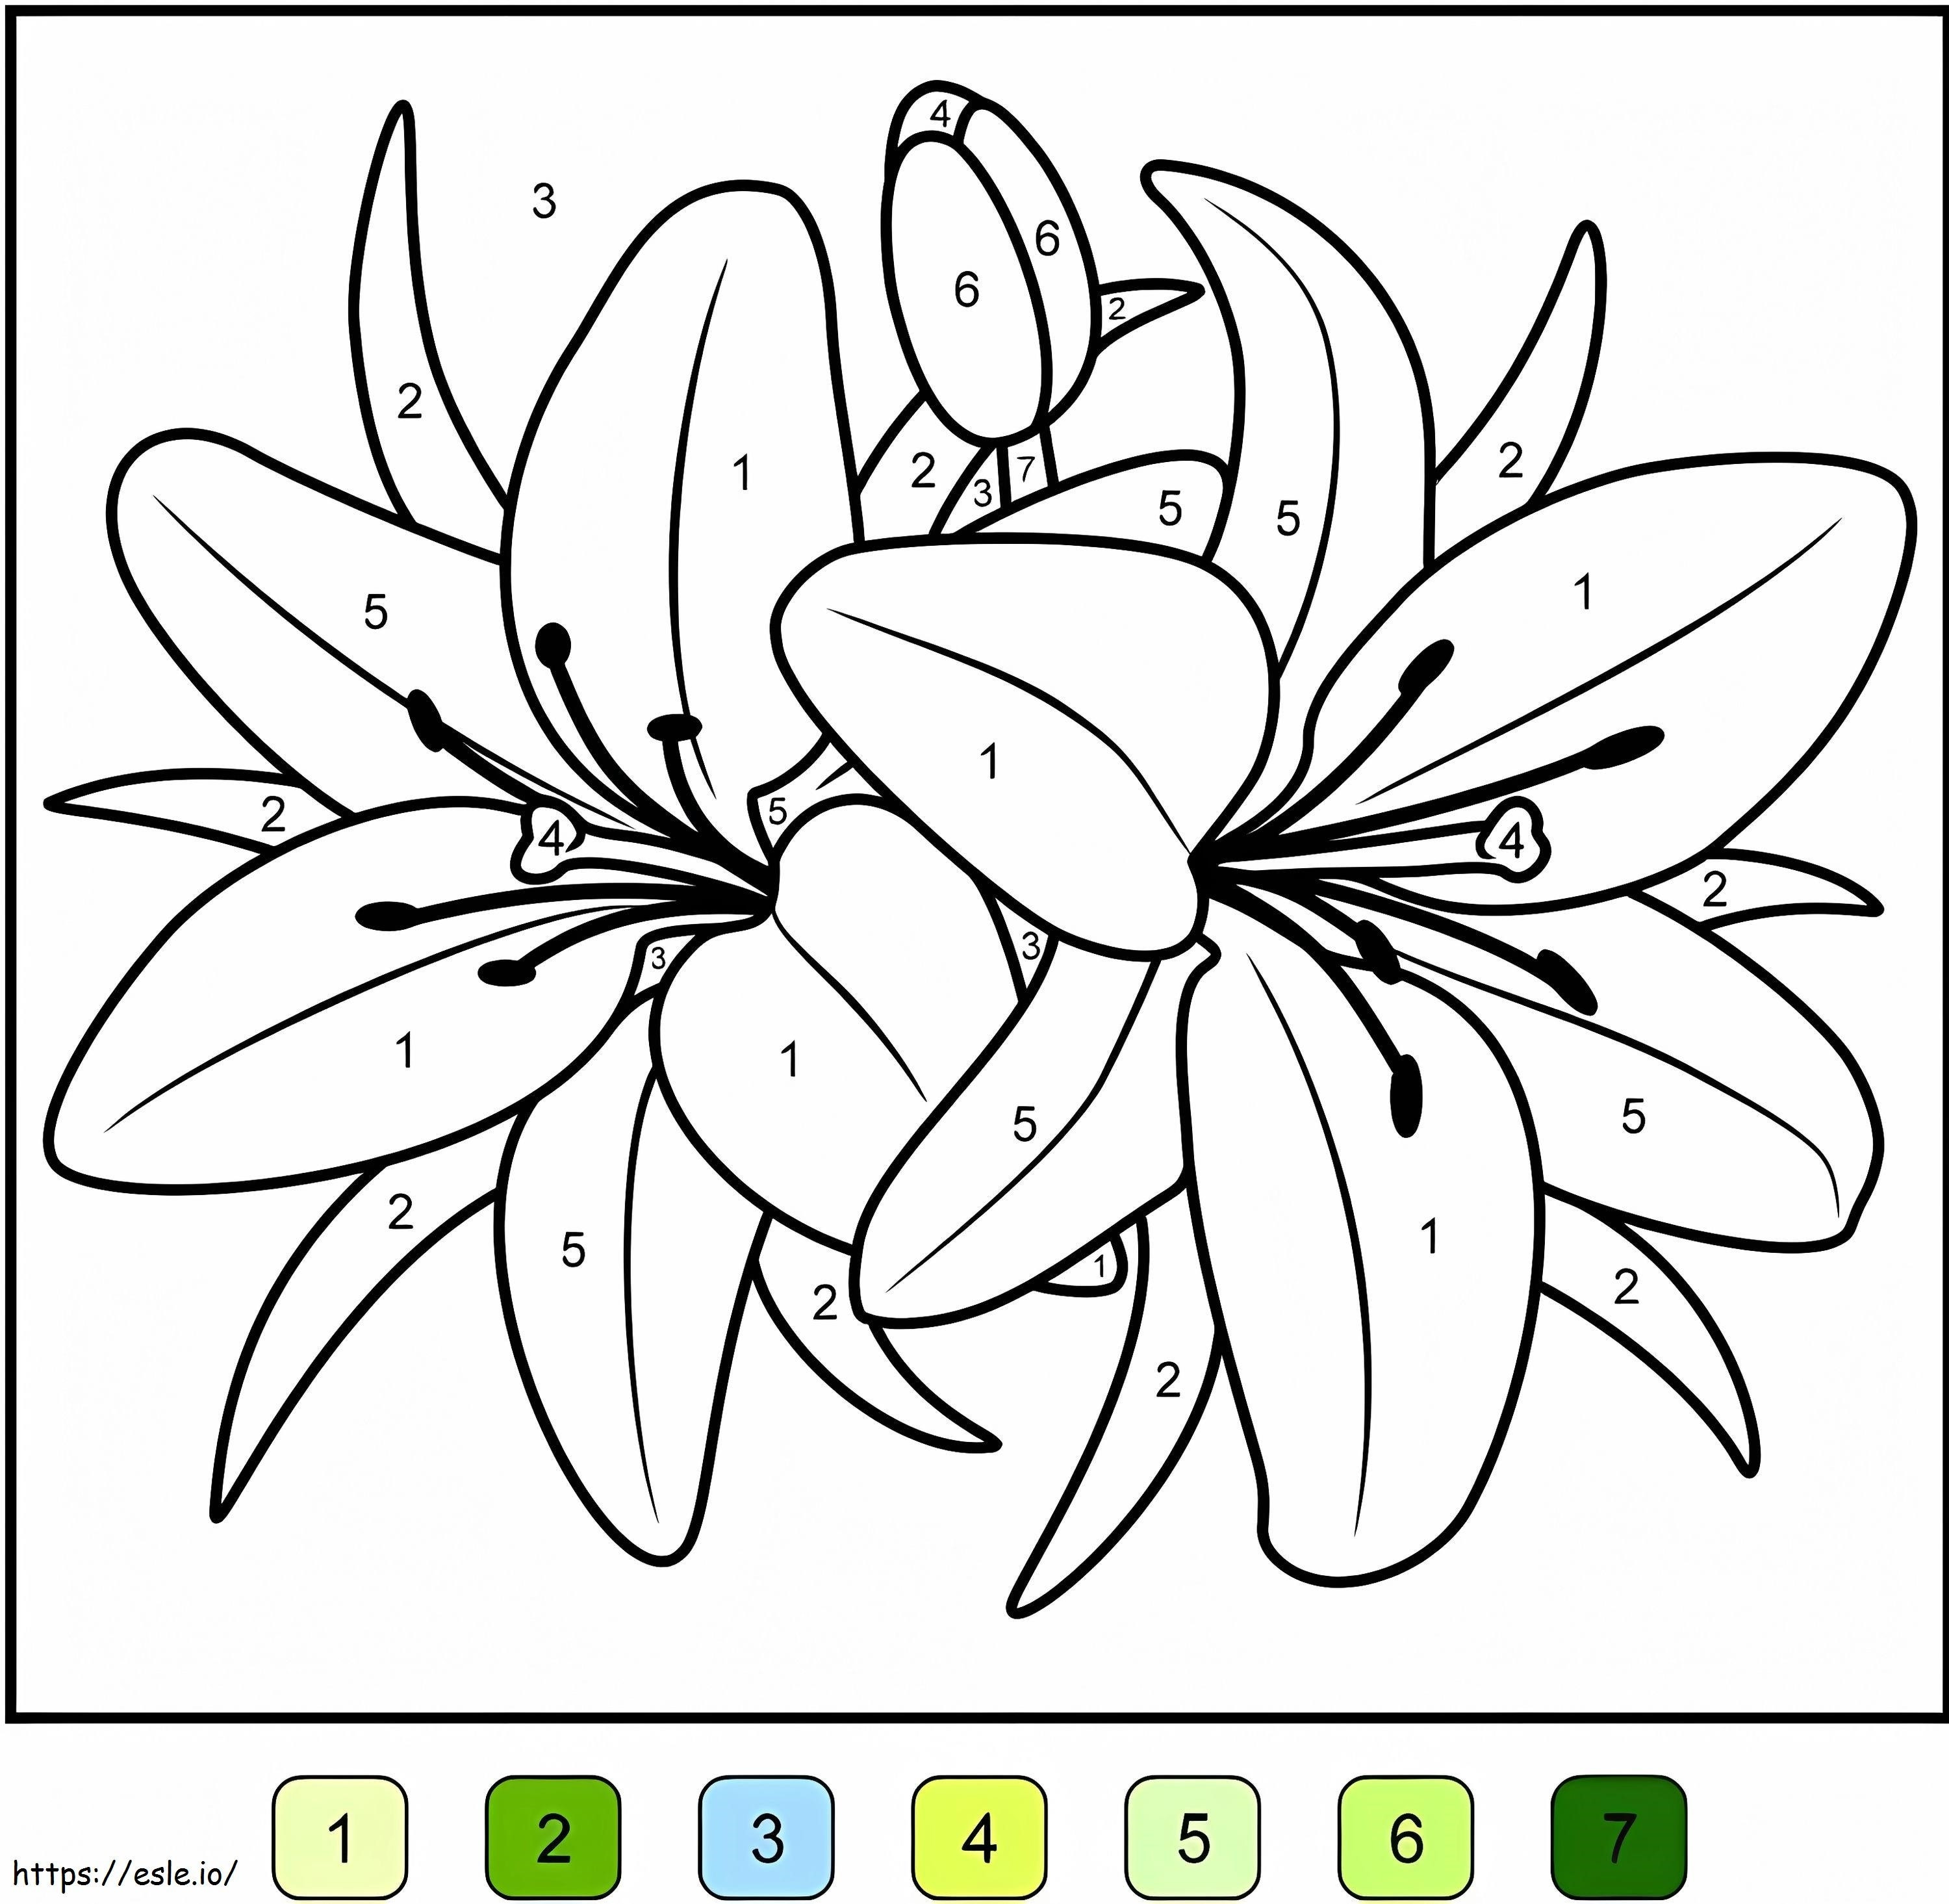 Liliom virág színe szám szerint kifestő